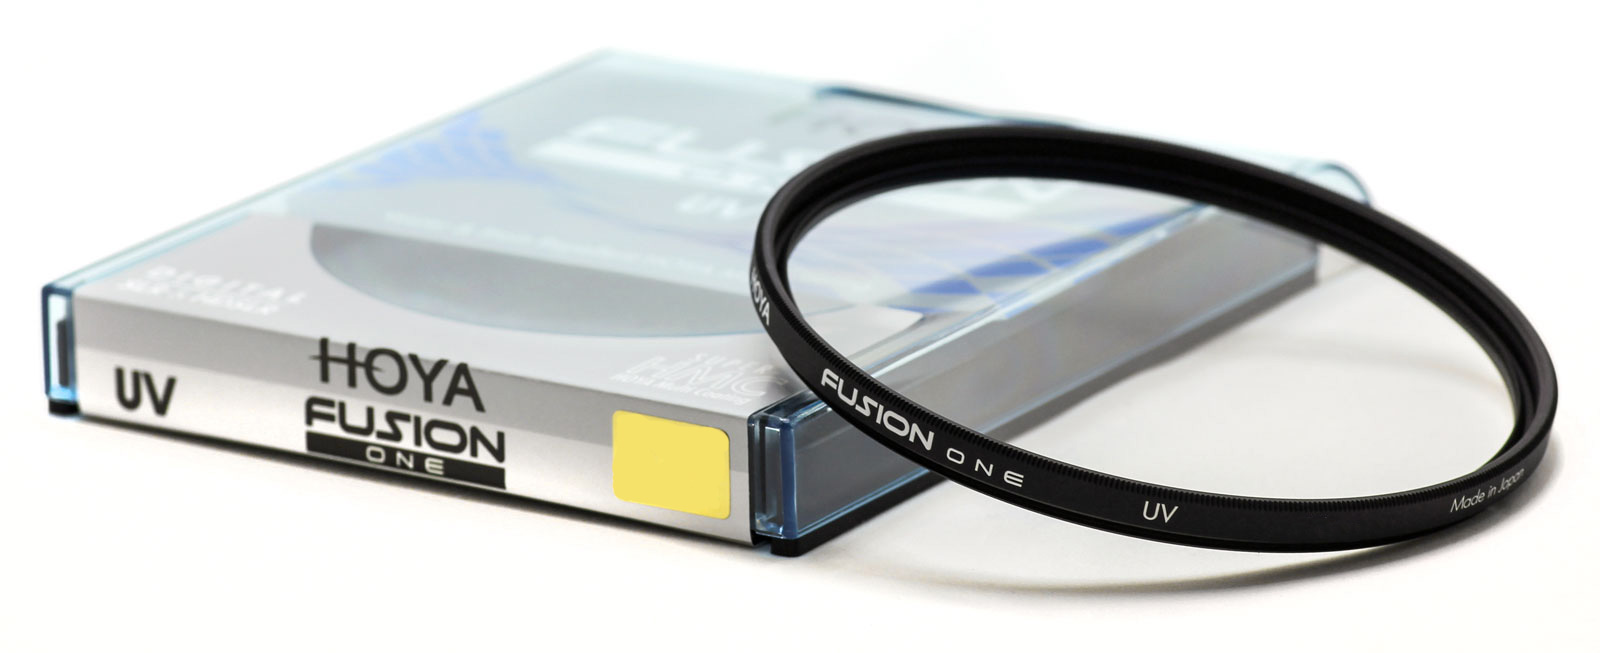      OUTLET Filtr Hoya UV Fusion One 40.5mm